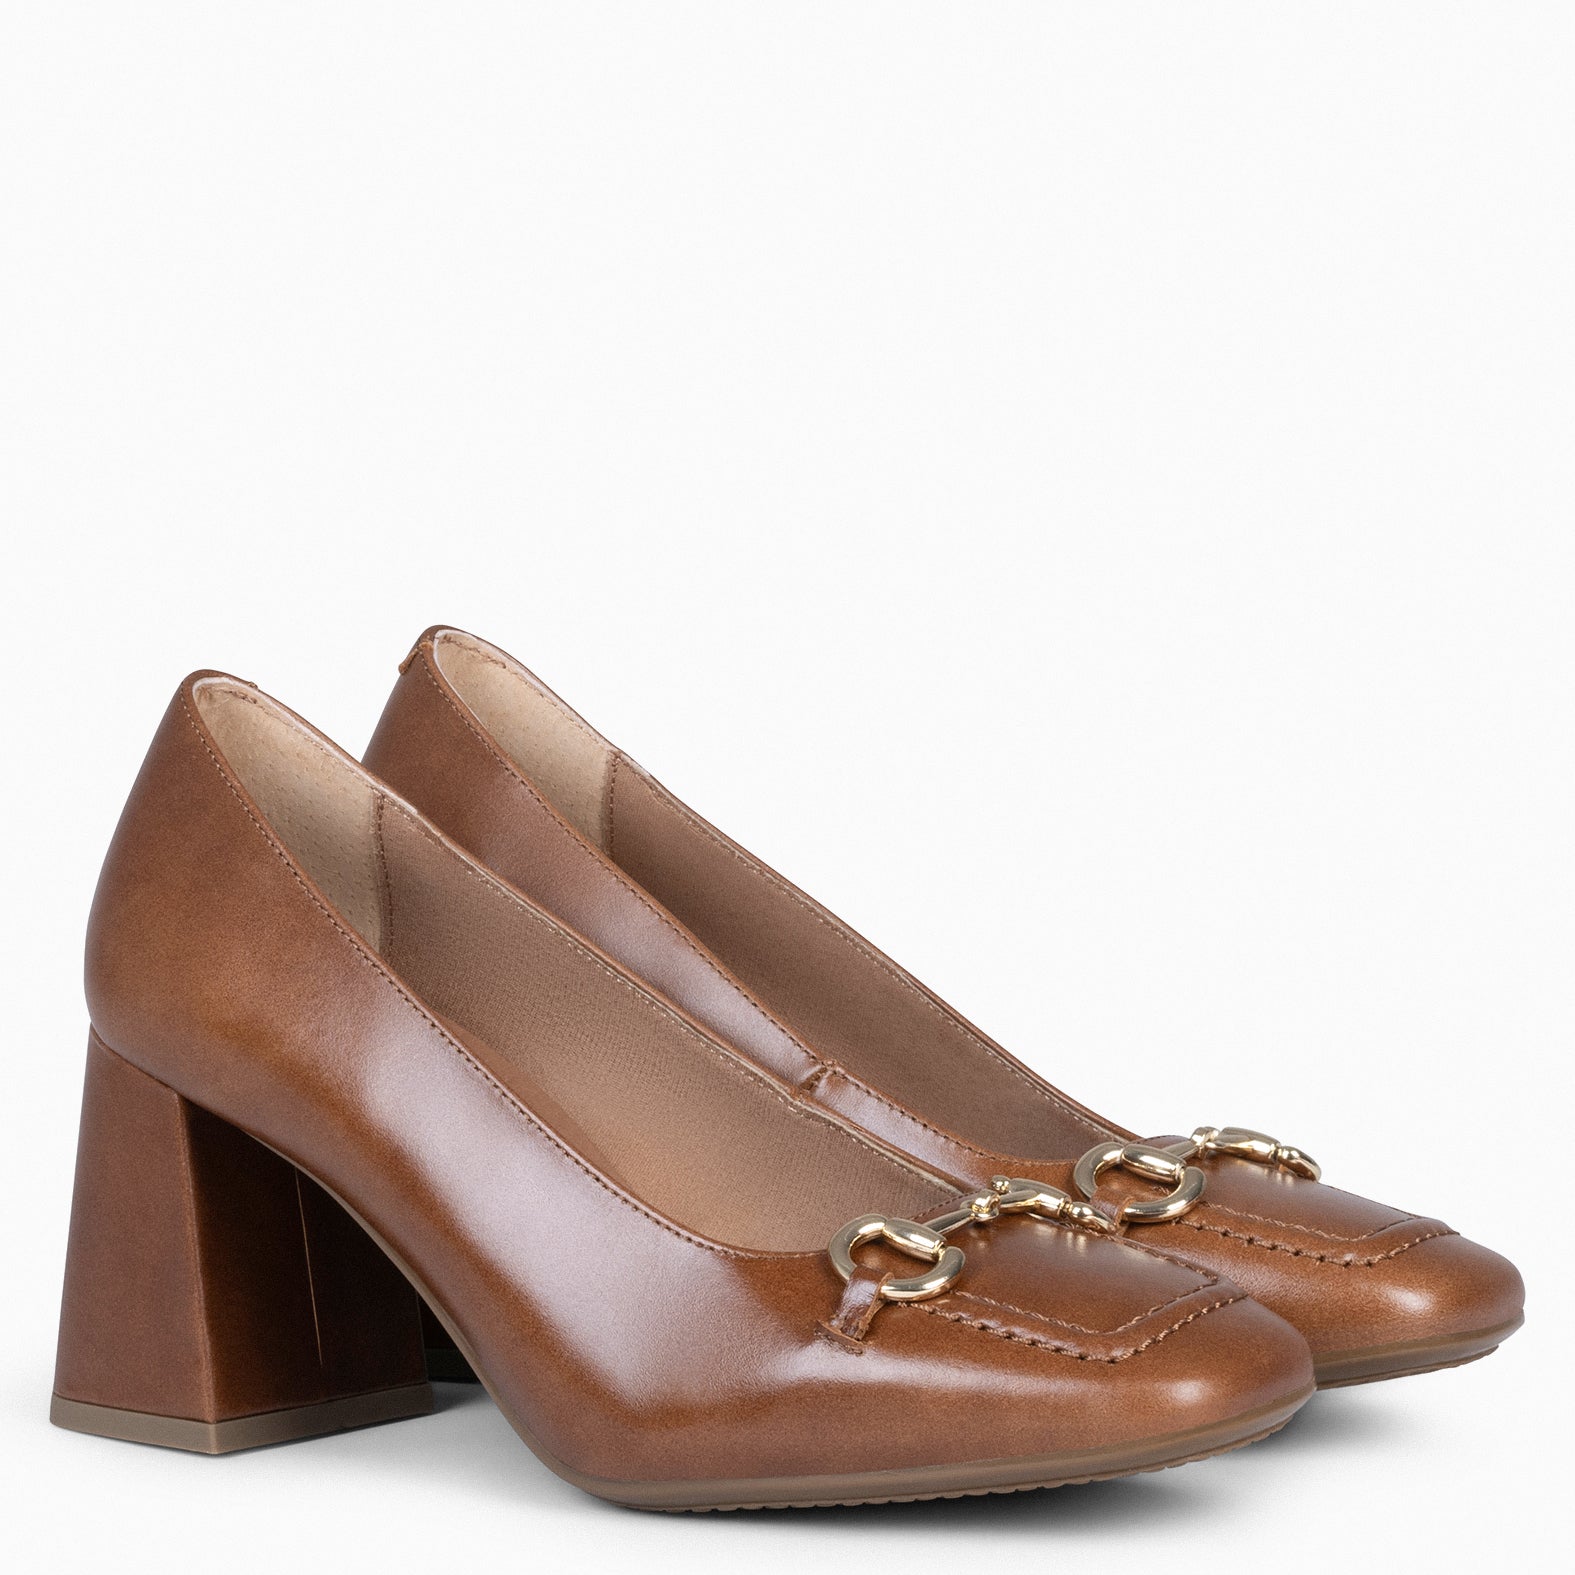 MIA – CAMEL Block heeled shoes